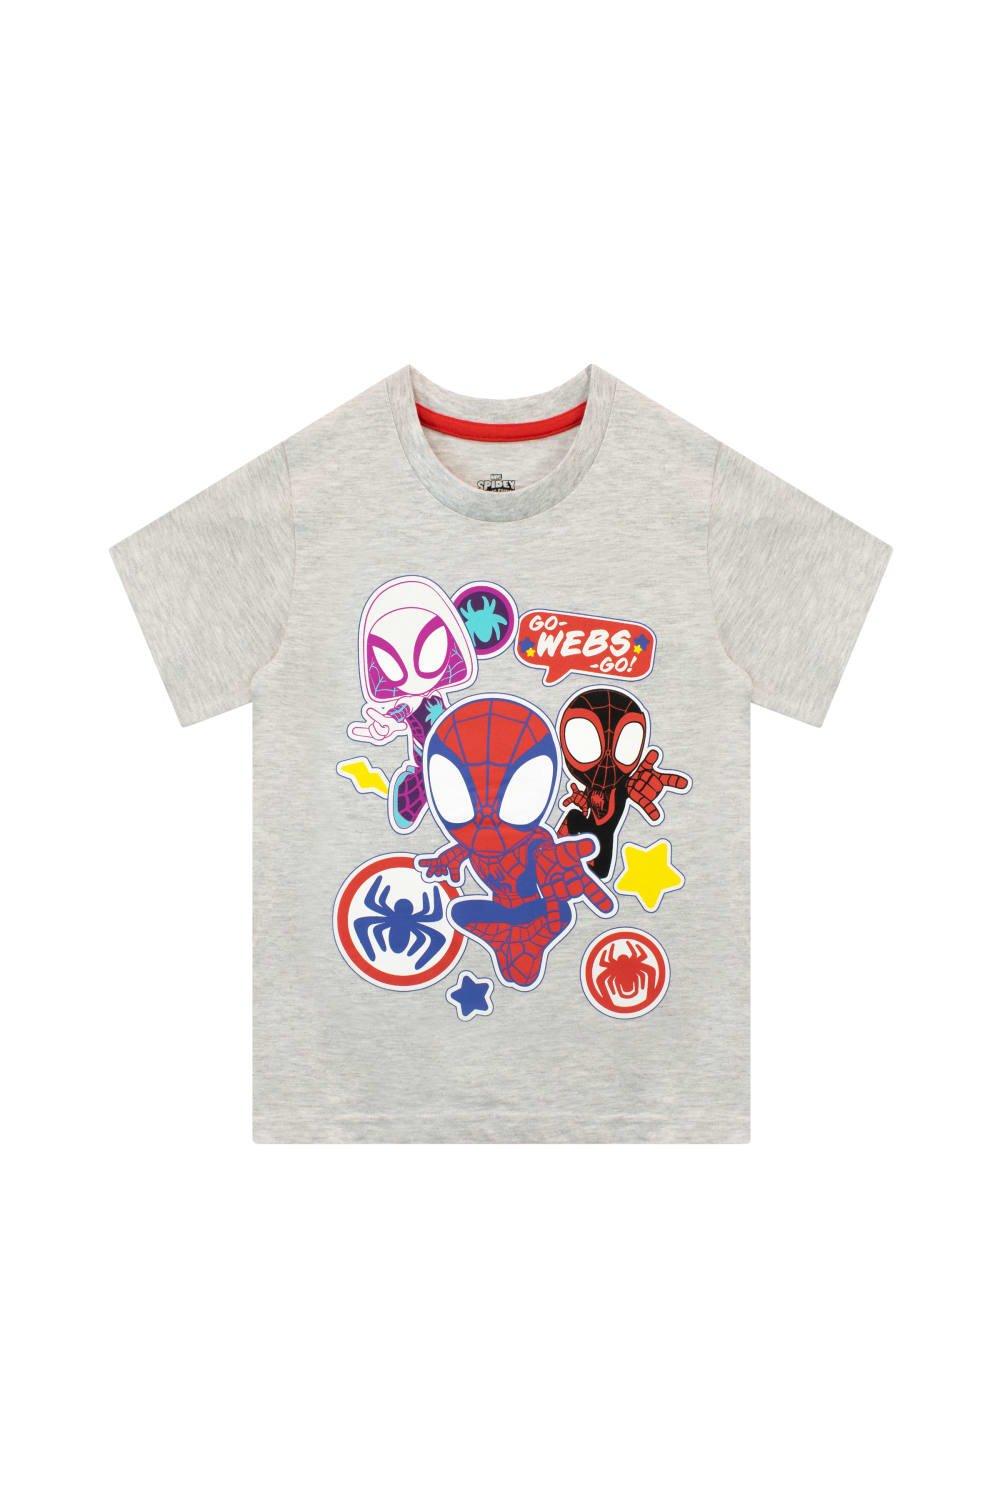 игра человек паук майлз моралес playstation 5 русская версия ppsa 01461 Футболка Spiderman Go Webs Go Marvel, серый